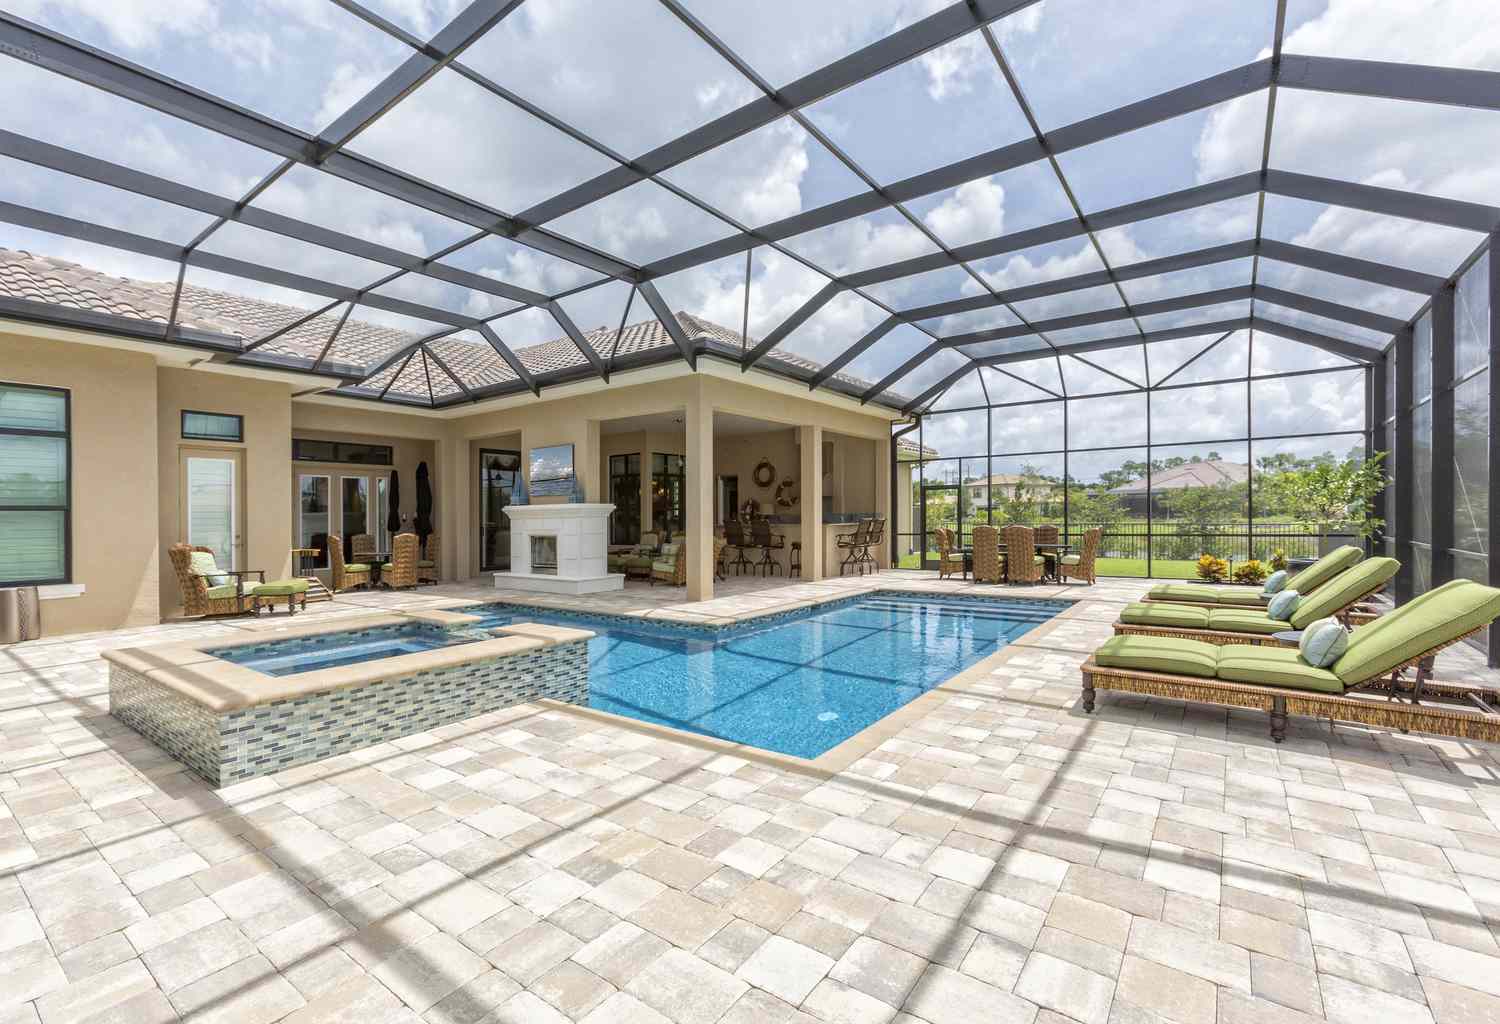 Una piscina cubierta con techo y azulejos de cristal, así como muebles verdes de patio.